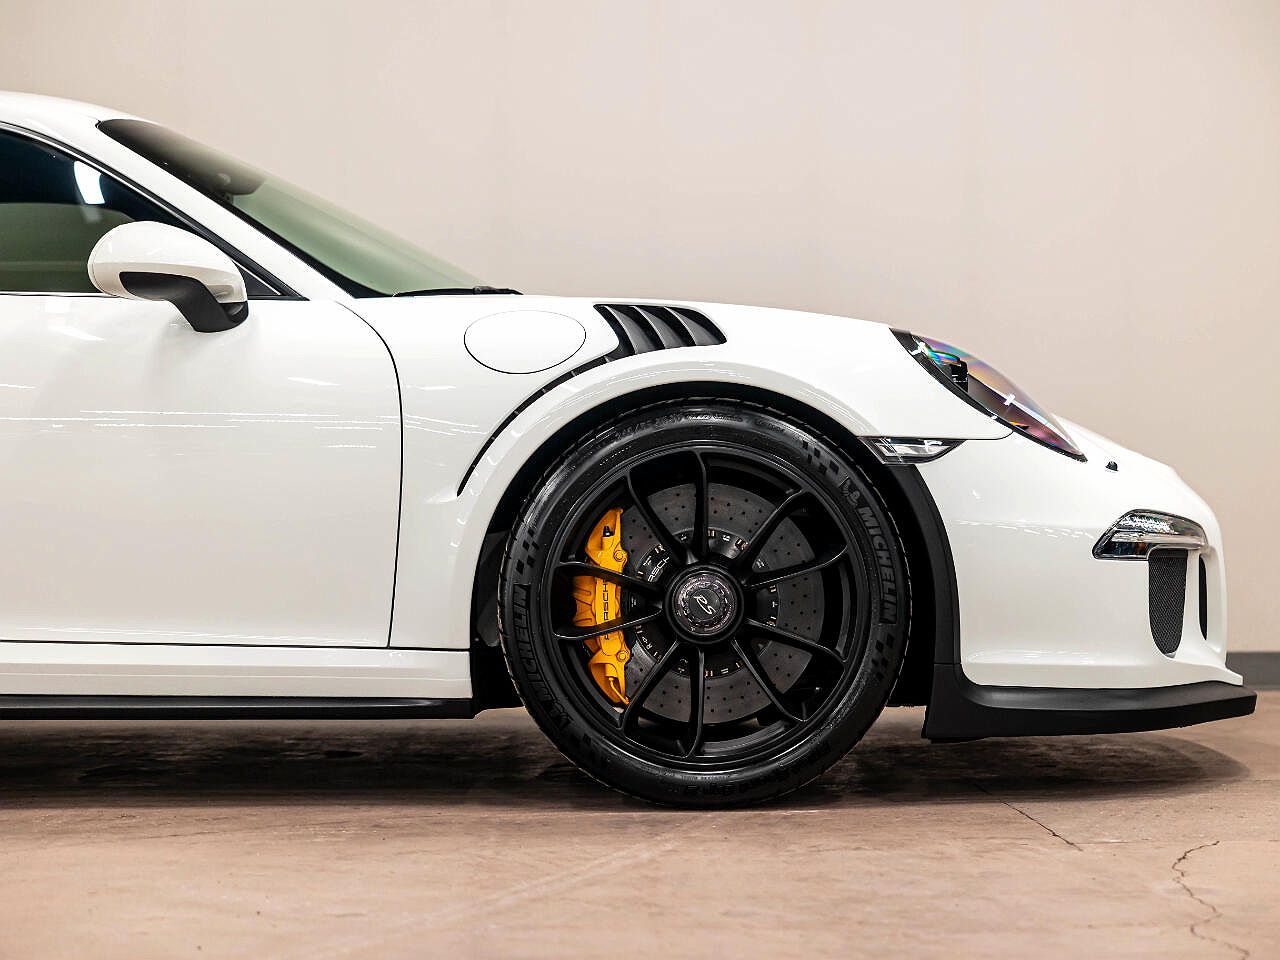 2016 Porsche 911 GT3 image 65